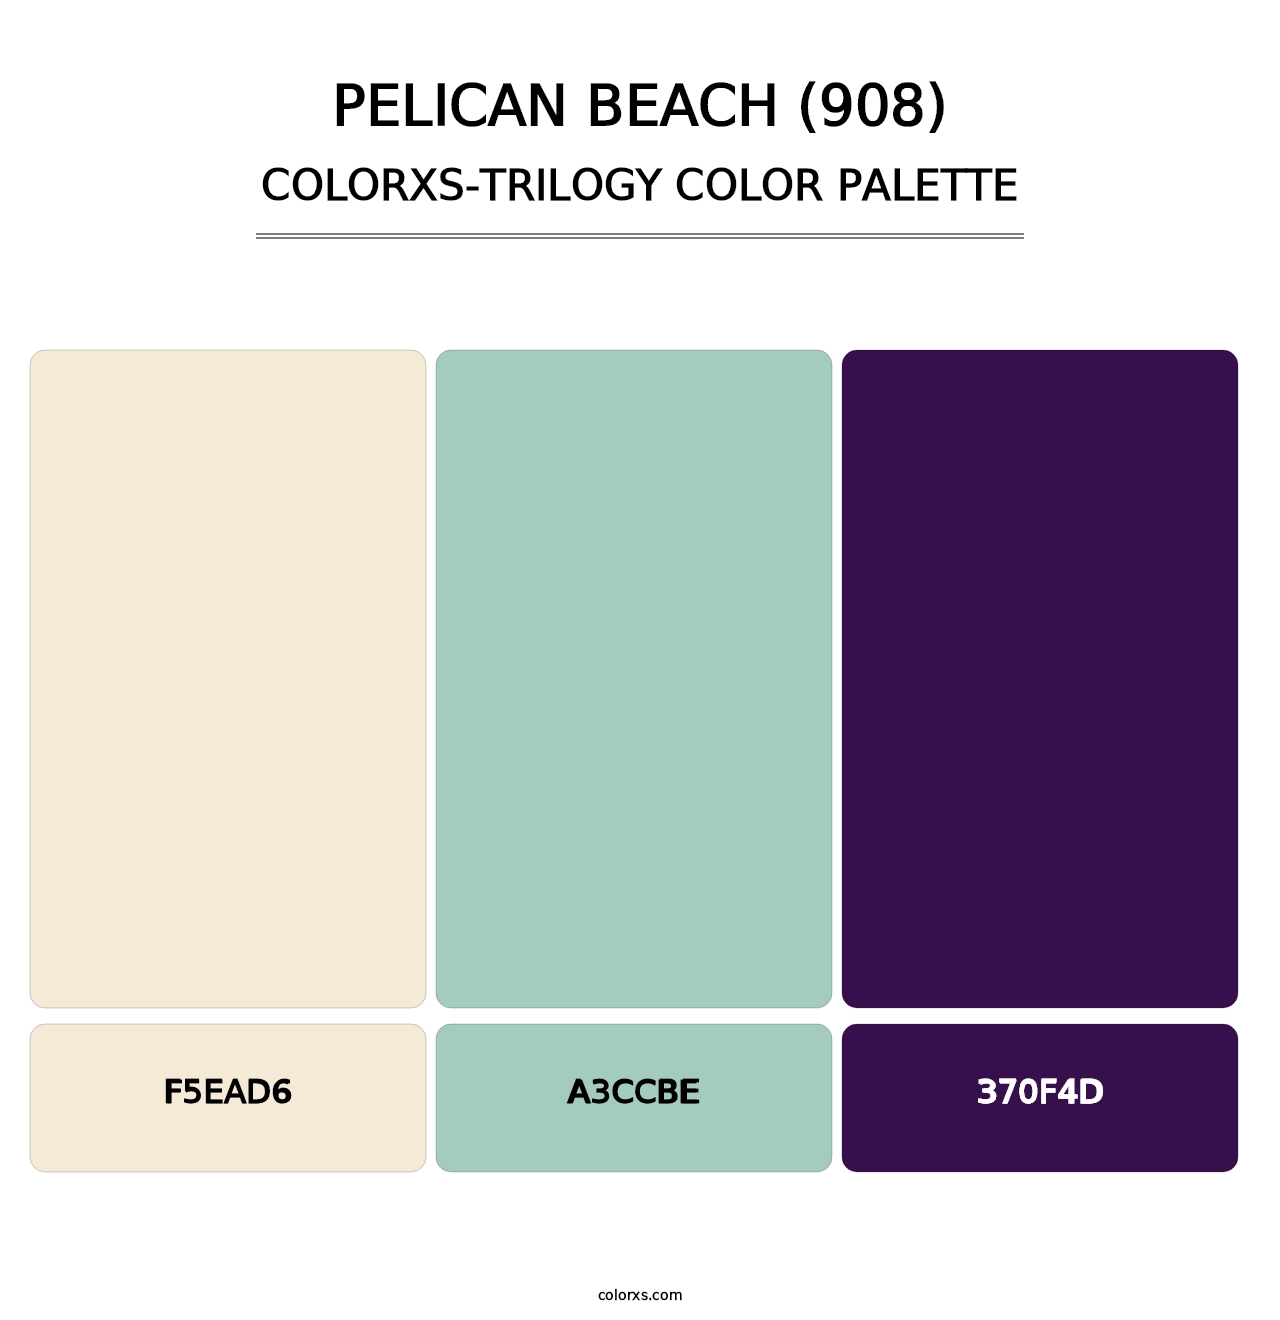 Pelican Beach (908) - Colorxs Trilogy Palette